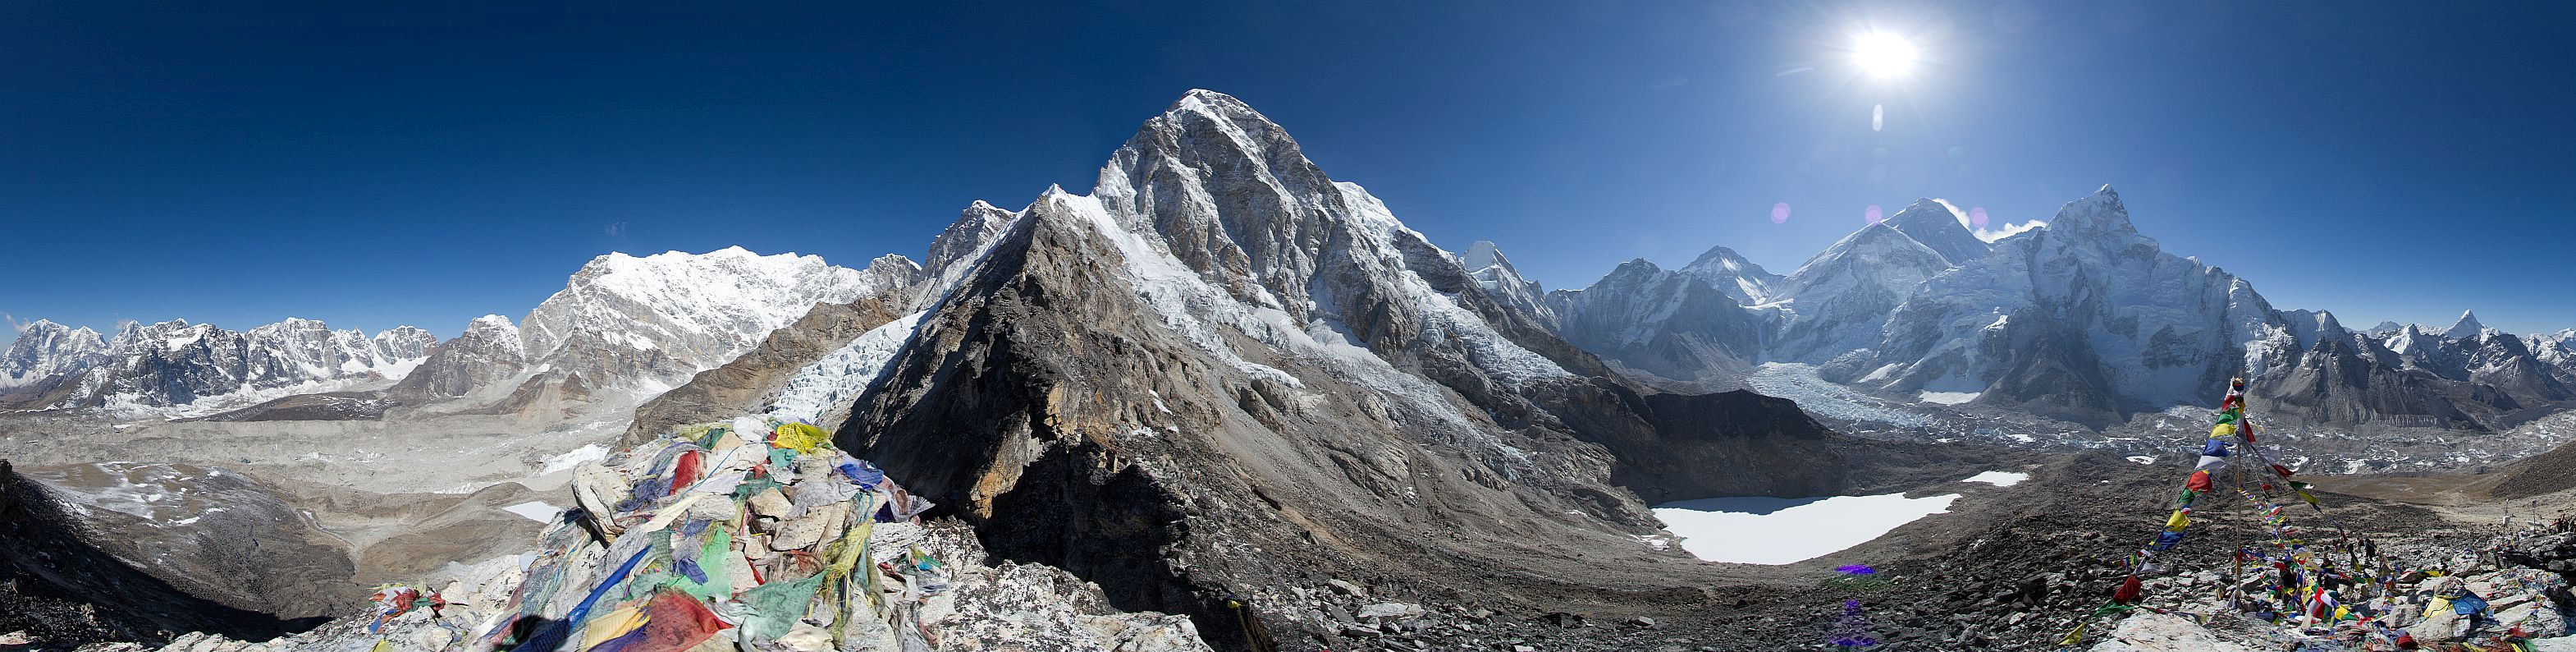 Mt. Pumori and Khumbu Glacier